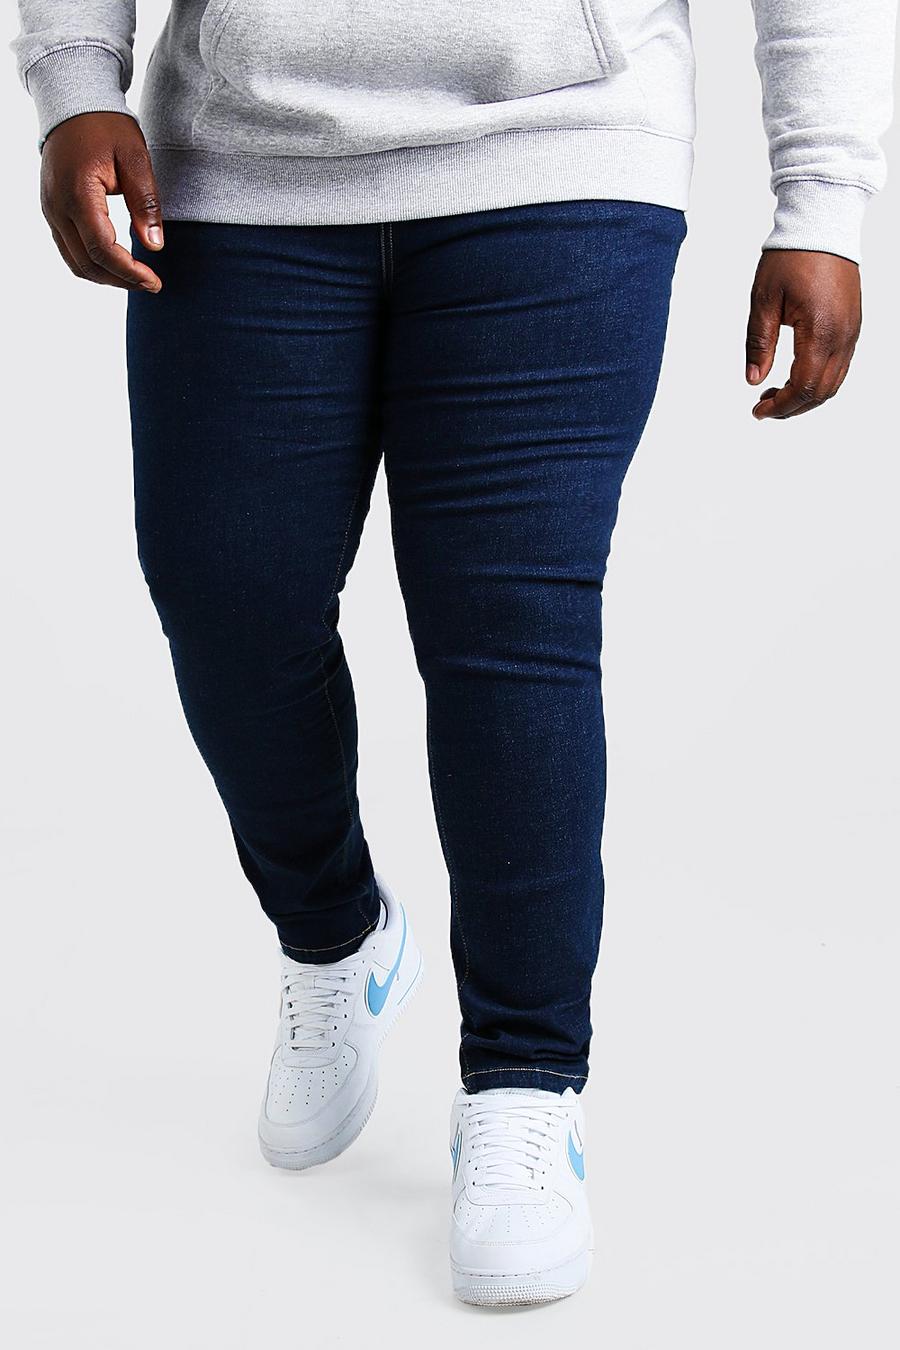 כחול כהה מכנסי ג'ינס בגזרת סקיני לגברים גדולים וגבוהים image number 1